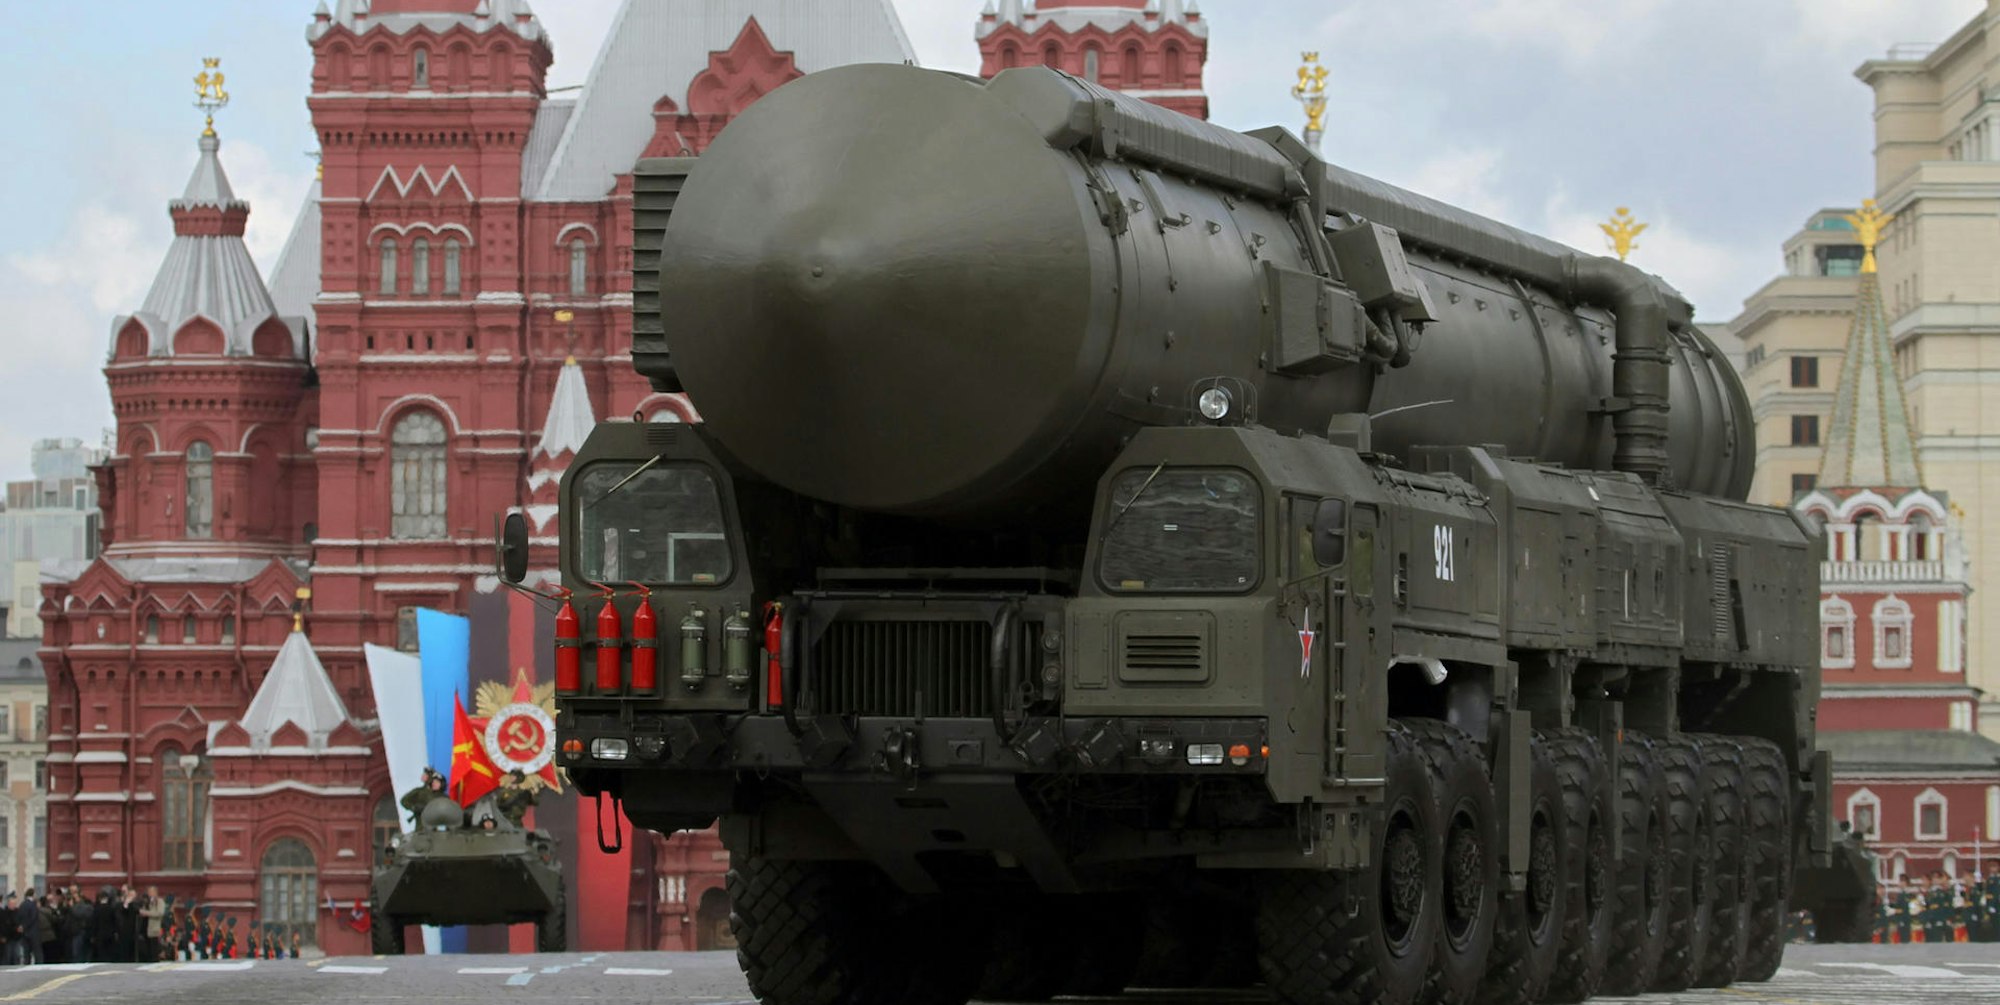 Nuklearwaffe Russland